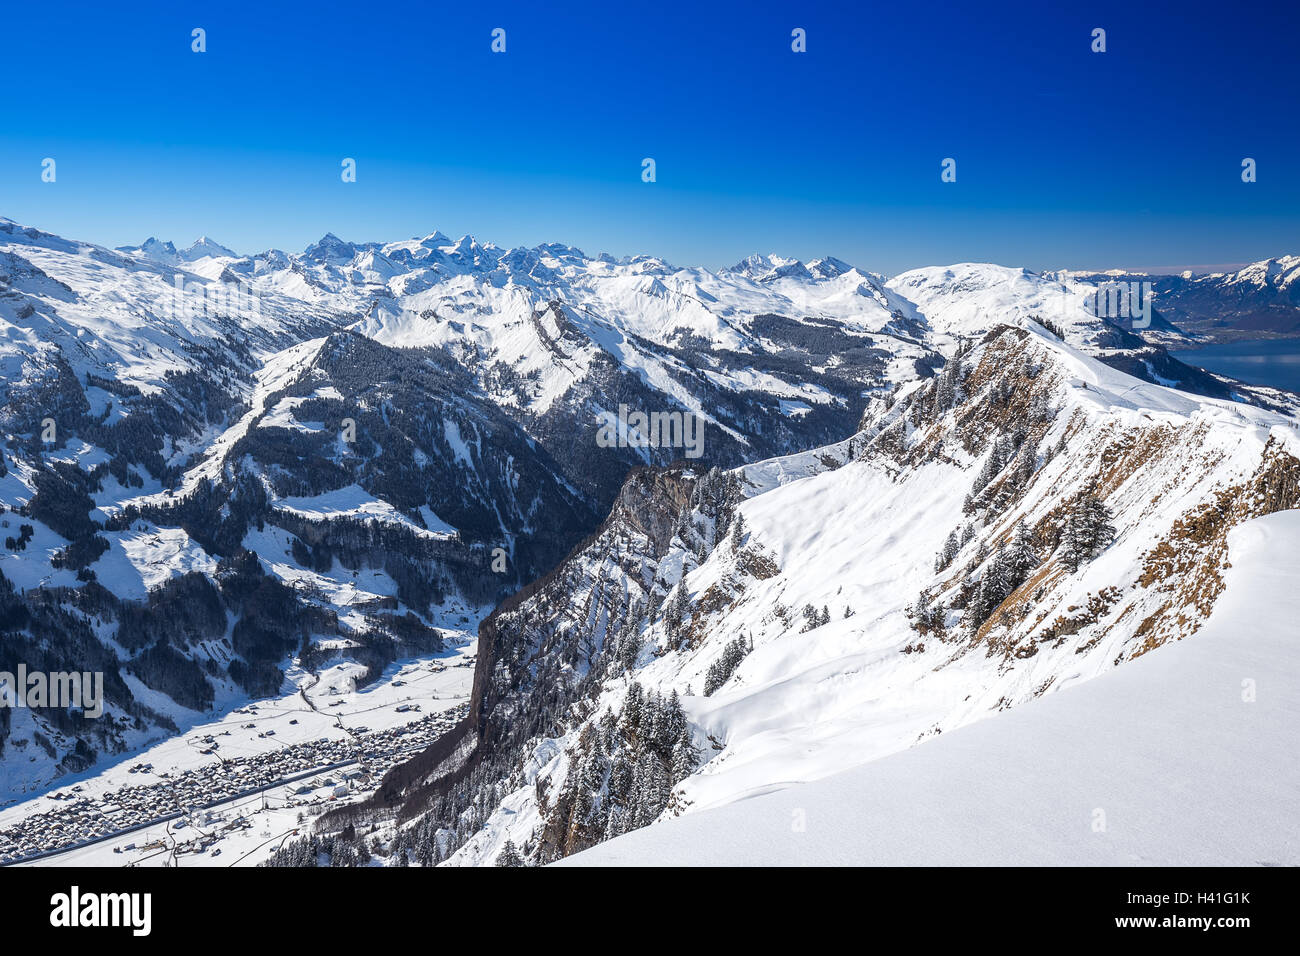 Muotathal-Tal und dem Vierwaldstättersee inmitten der Schweizer Alpen gesehen von Hoch-Ybrig ski Resort, Schwyz, Zentralschweiz Stockfoto